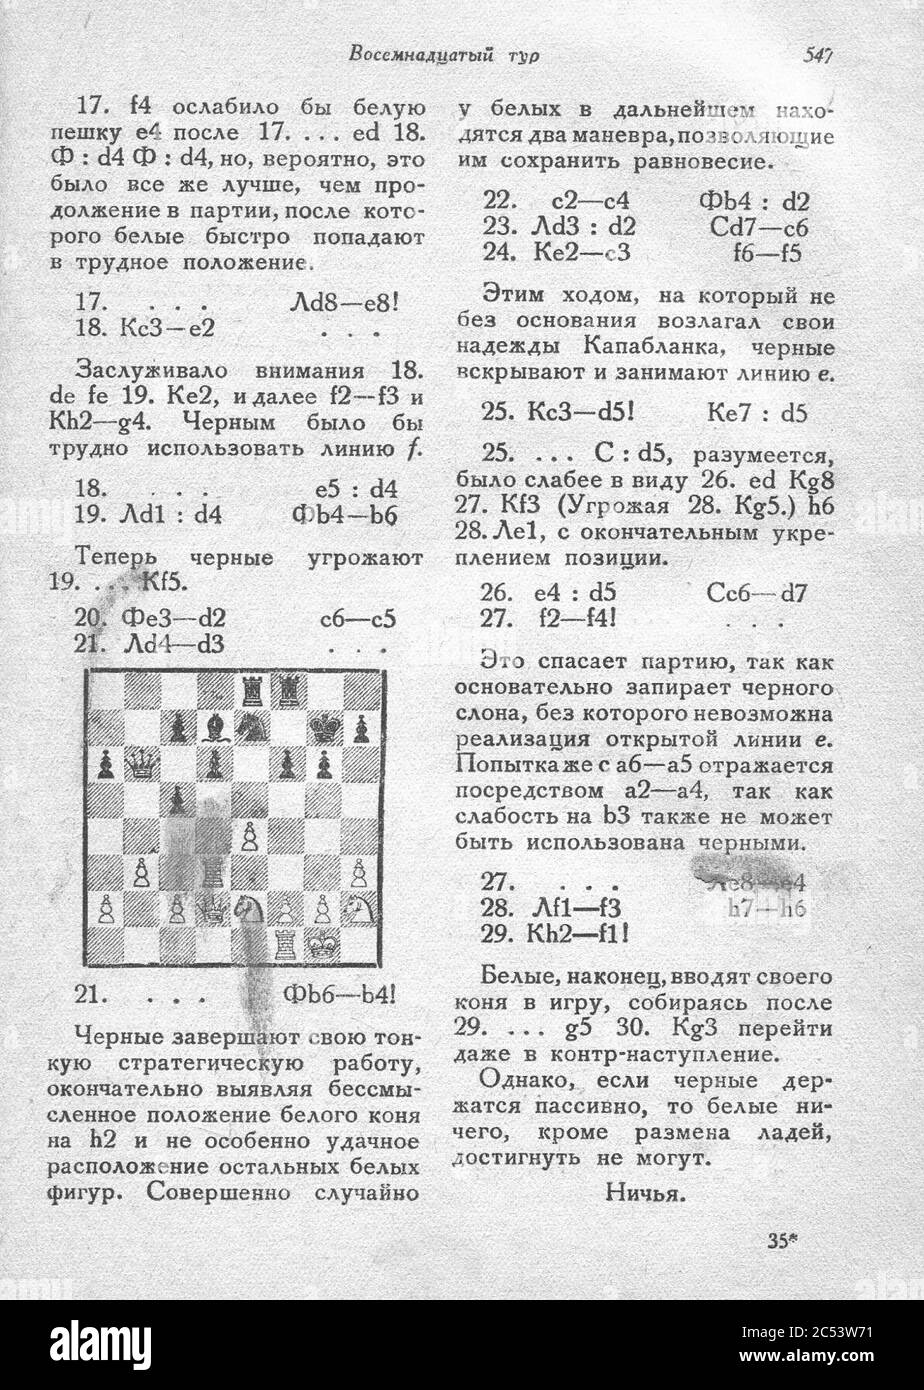 International chess tournament. 1935 year. img 550. Stock Photo